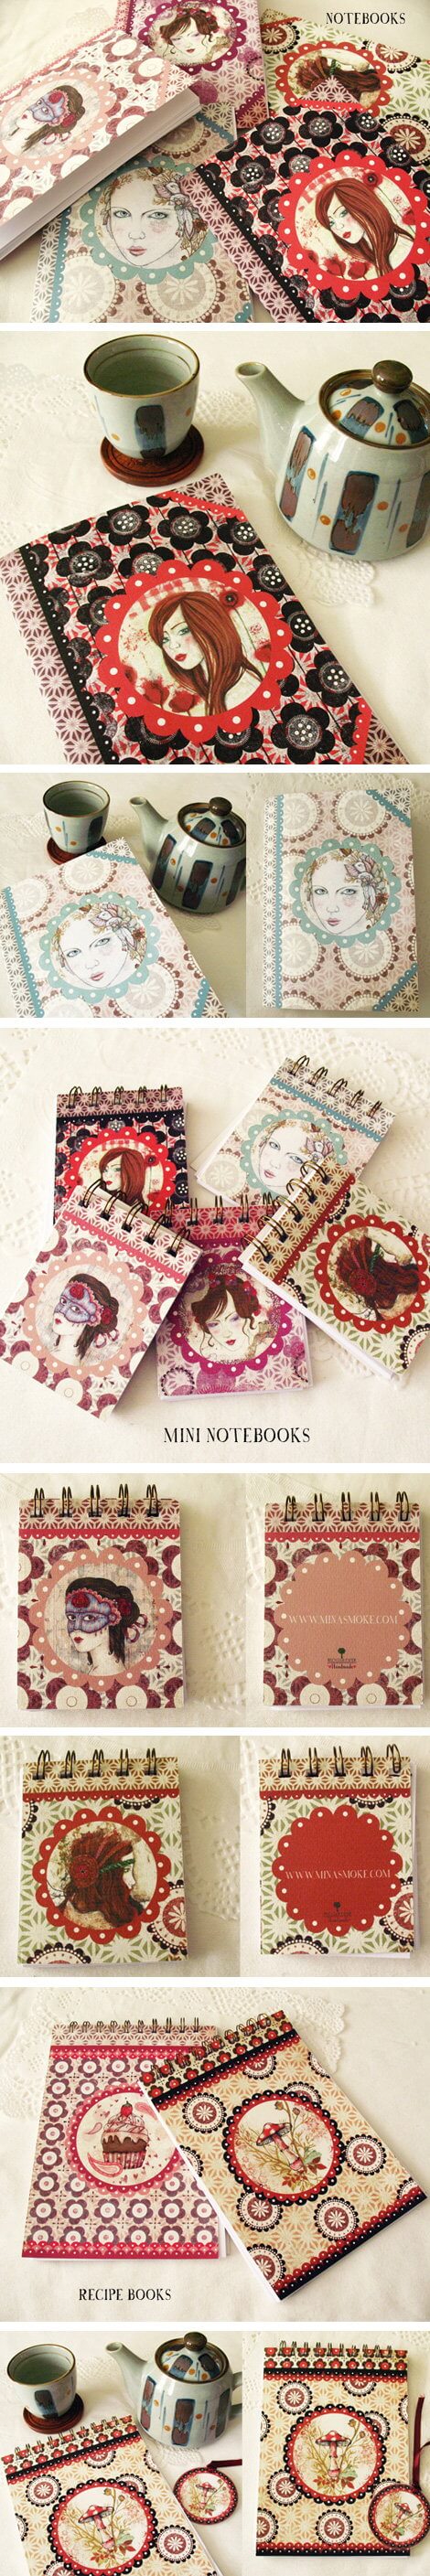 Notebooks — MinaSmoke